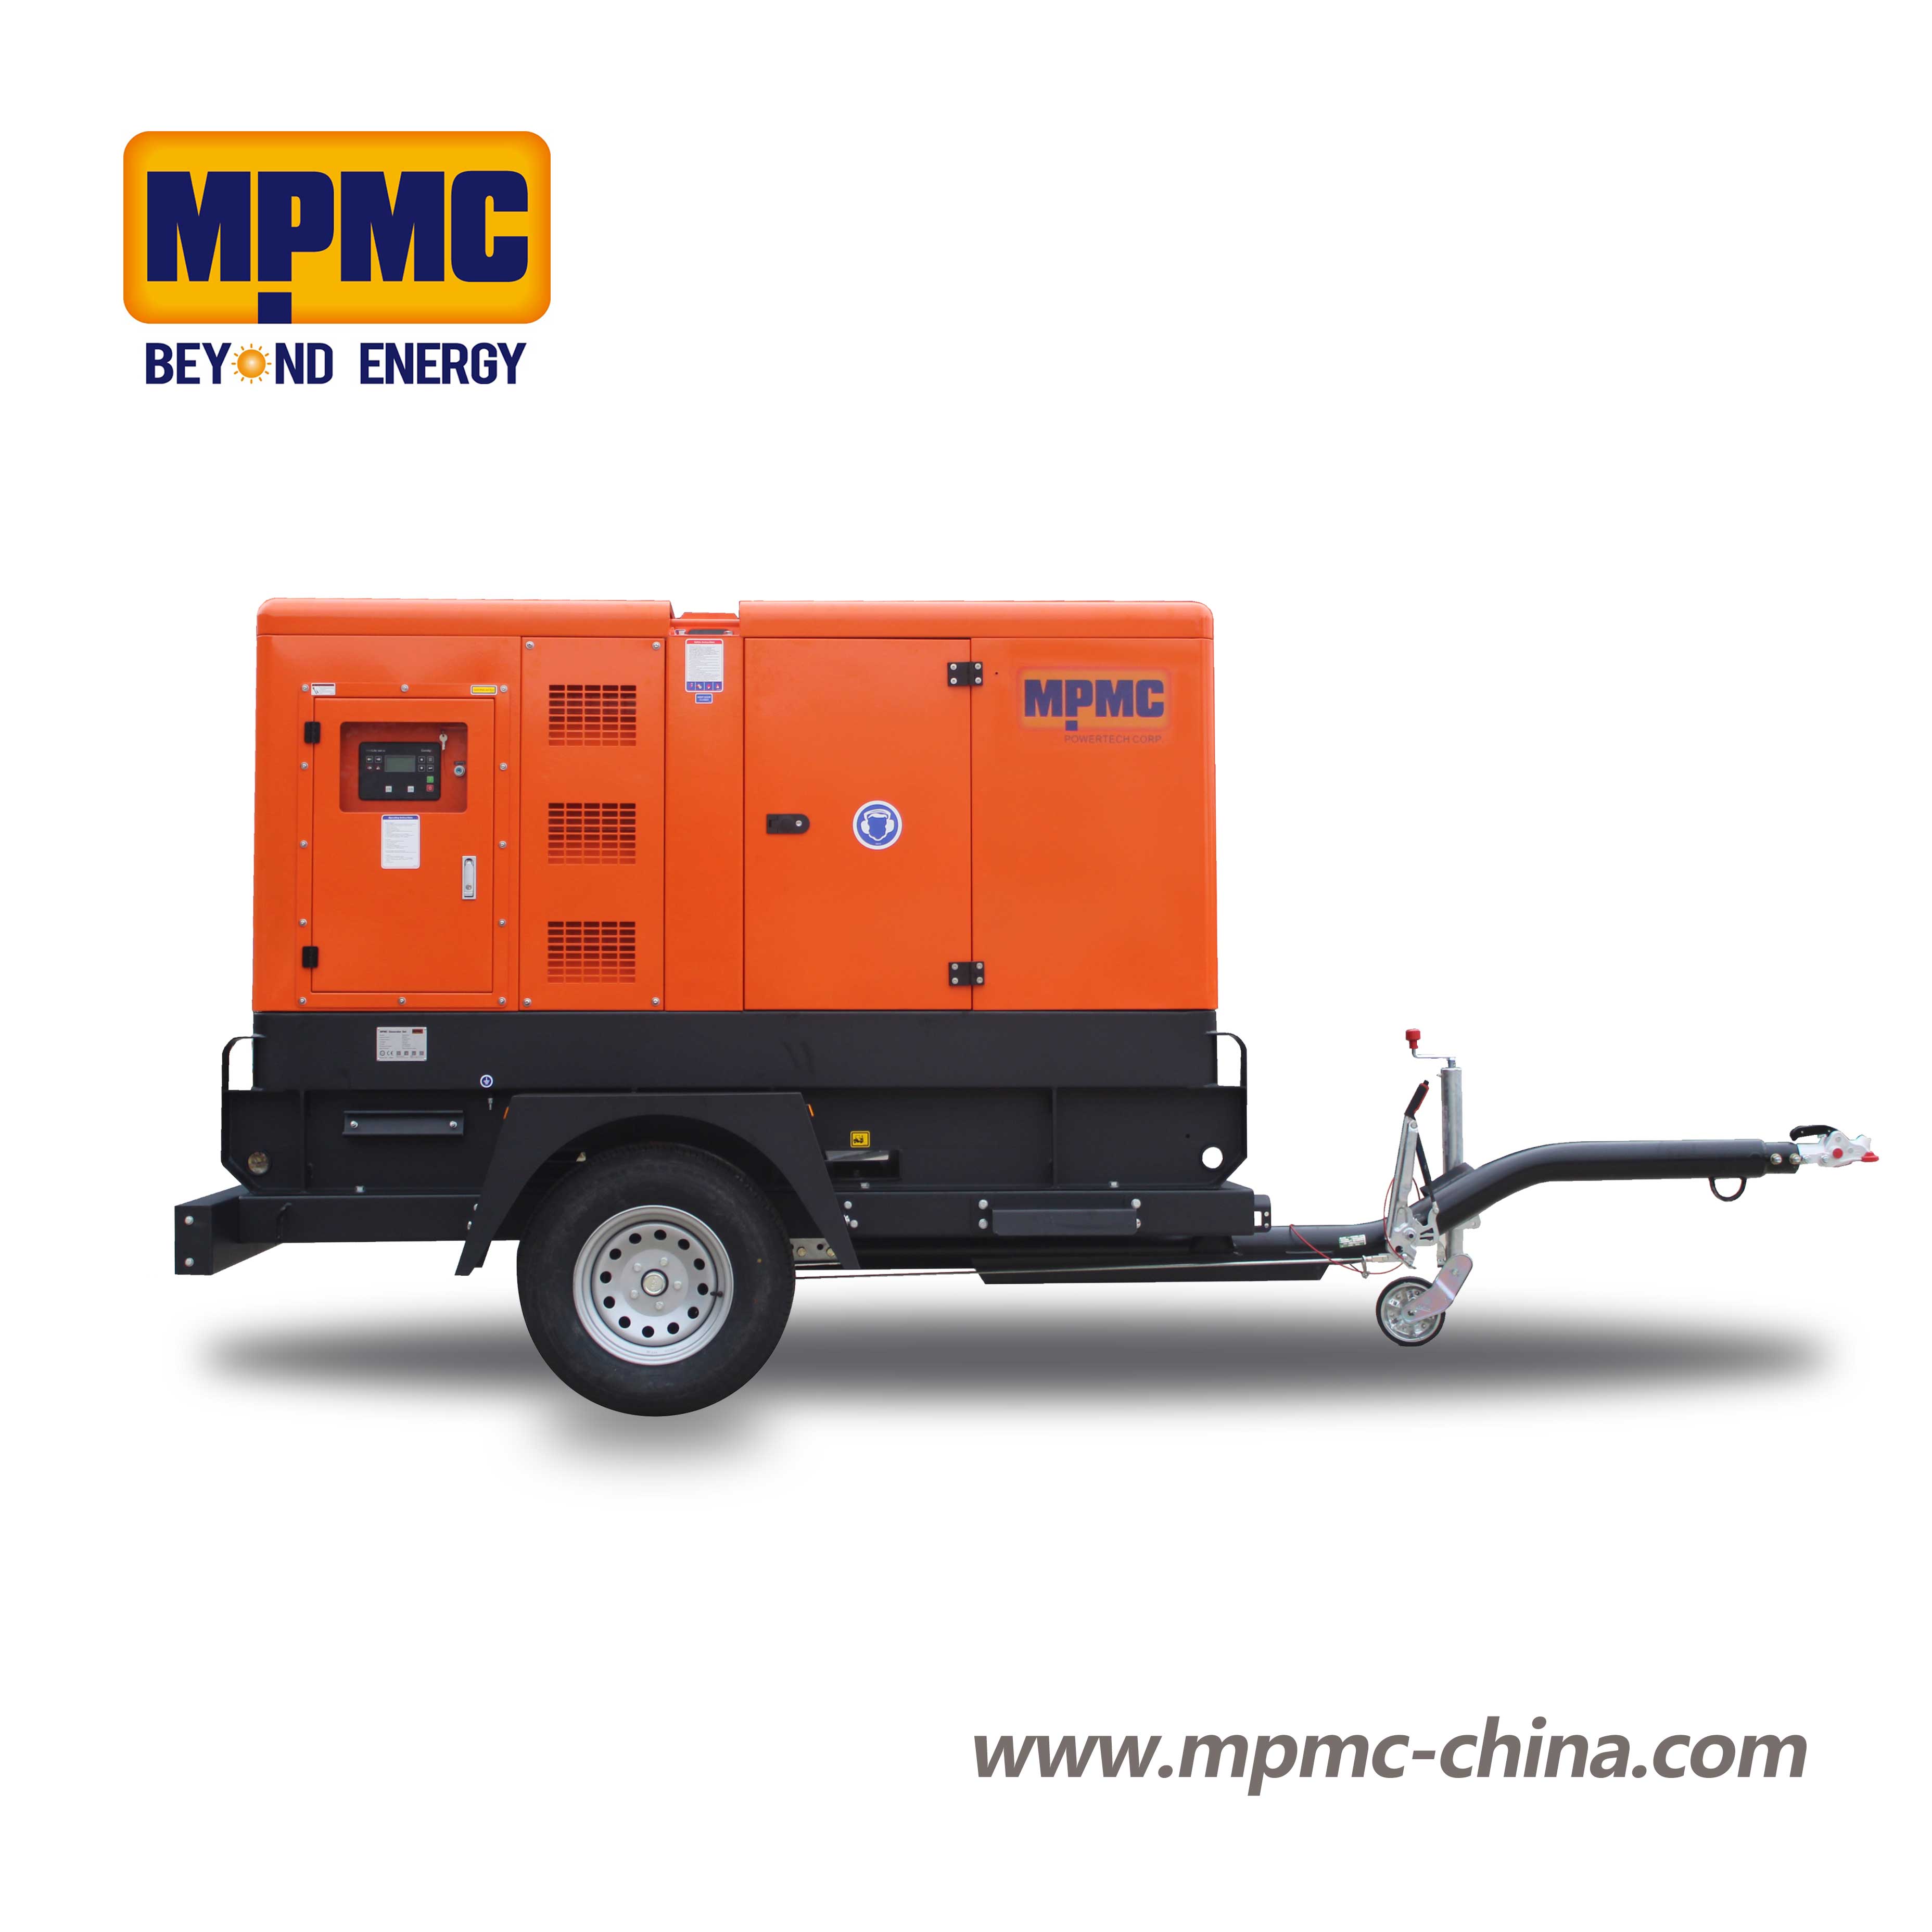 移动拖车型柴油发电机组 Made By MPMC